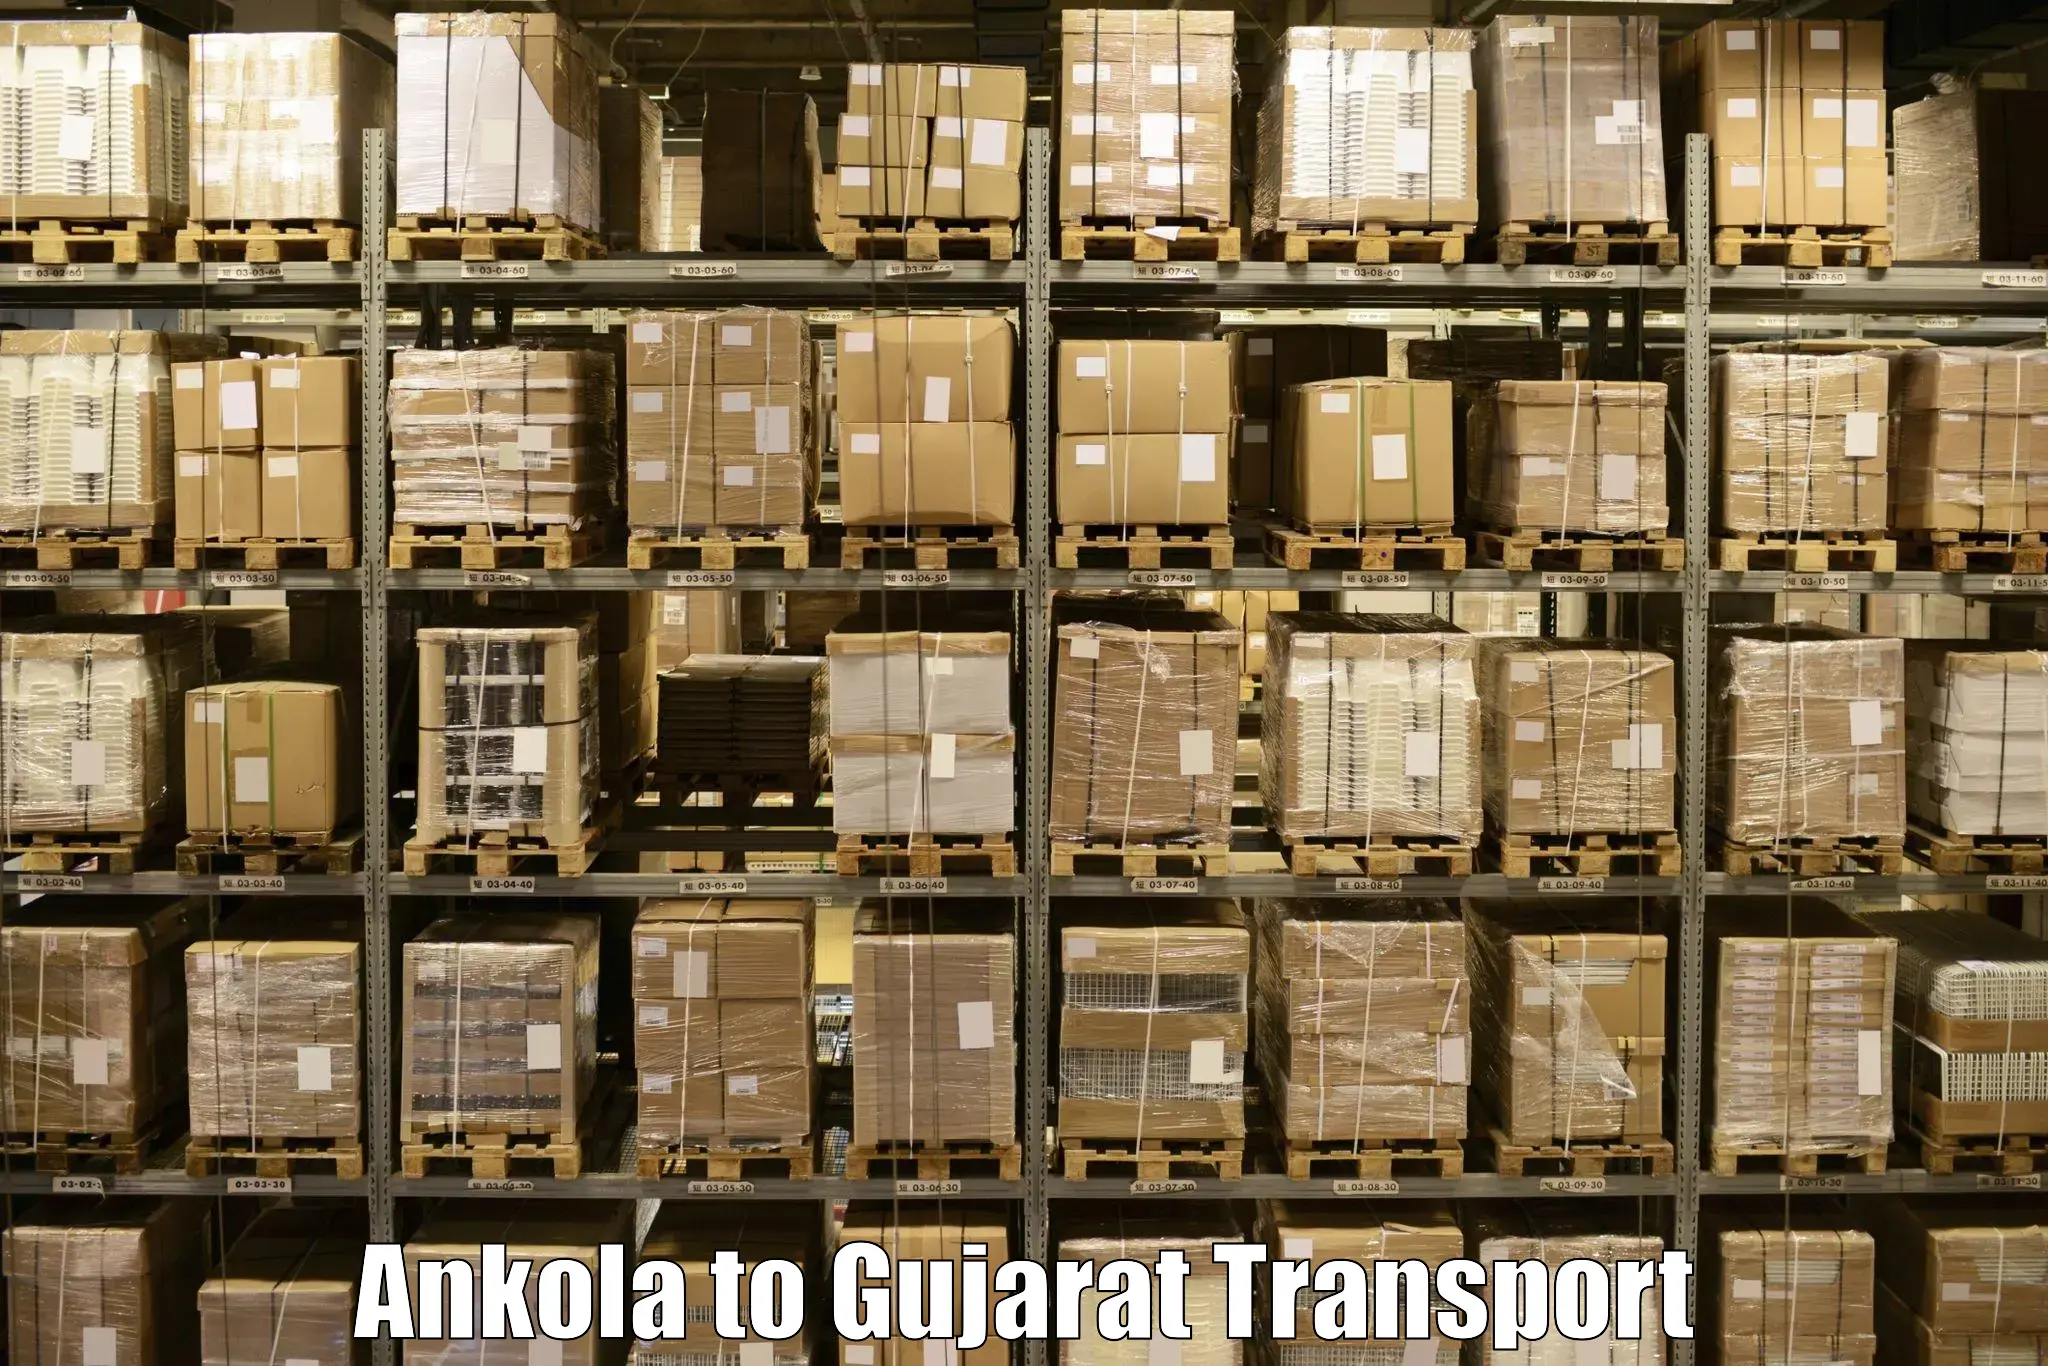 Nearest transport service Ankola to IIIT Surat